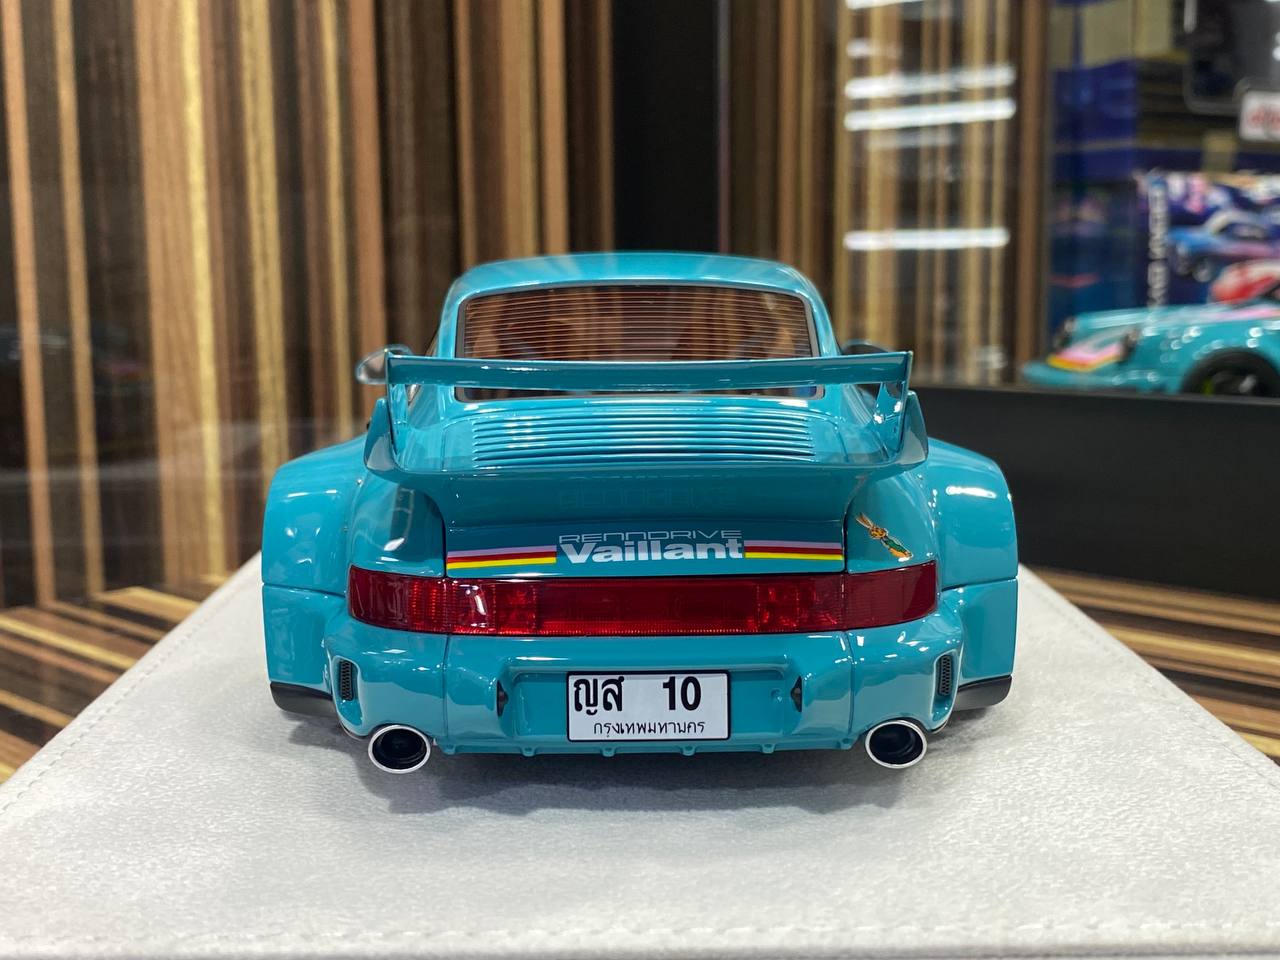 1/18 Diecast Porsche Vaillant 964 Begriff #10 Blue FuelMe Model Car